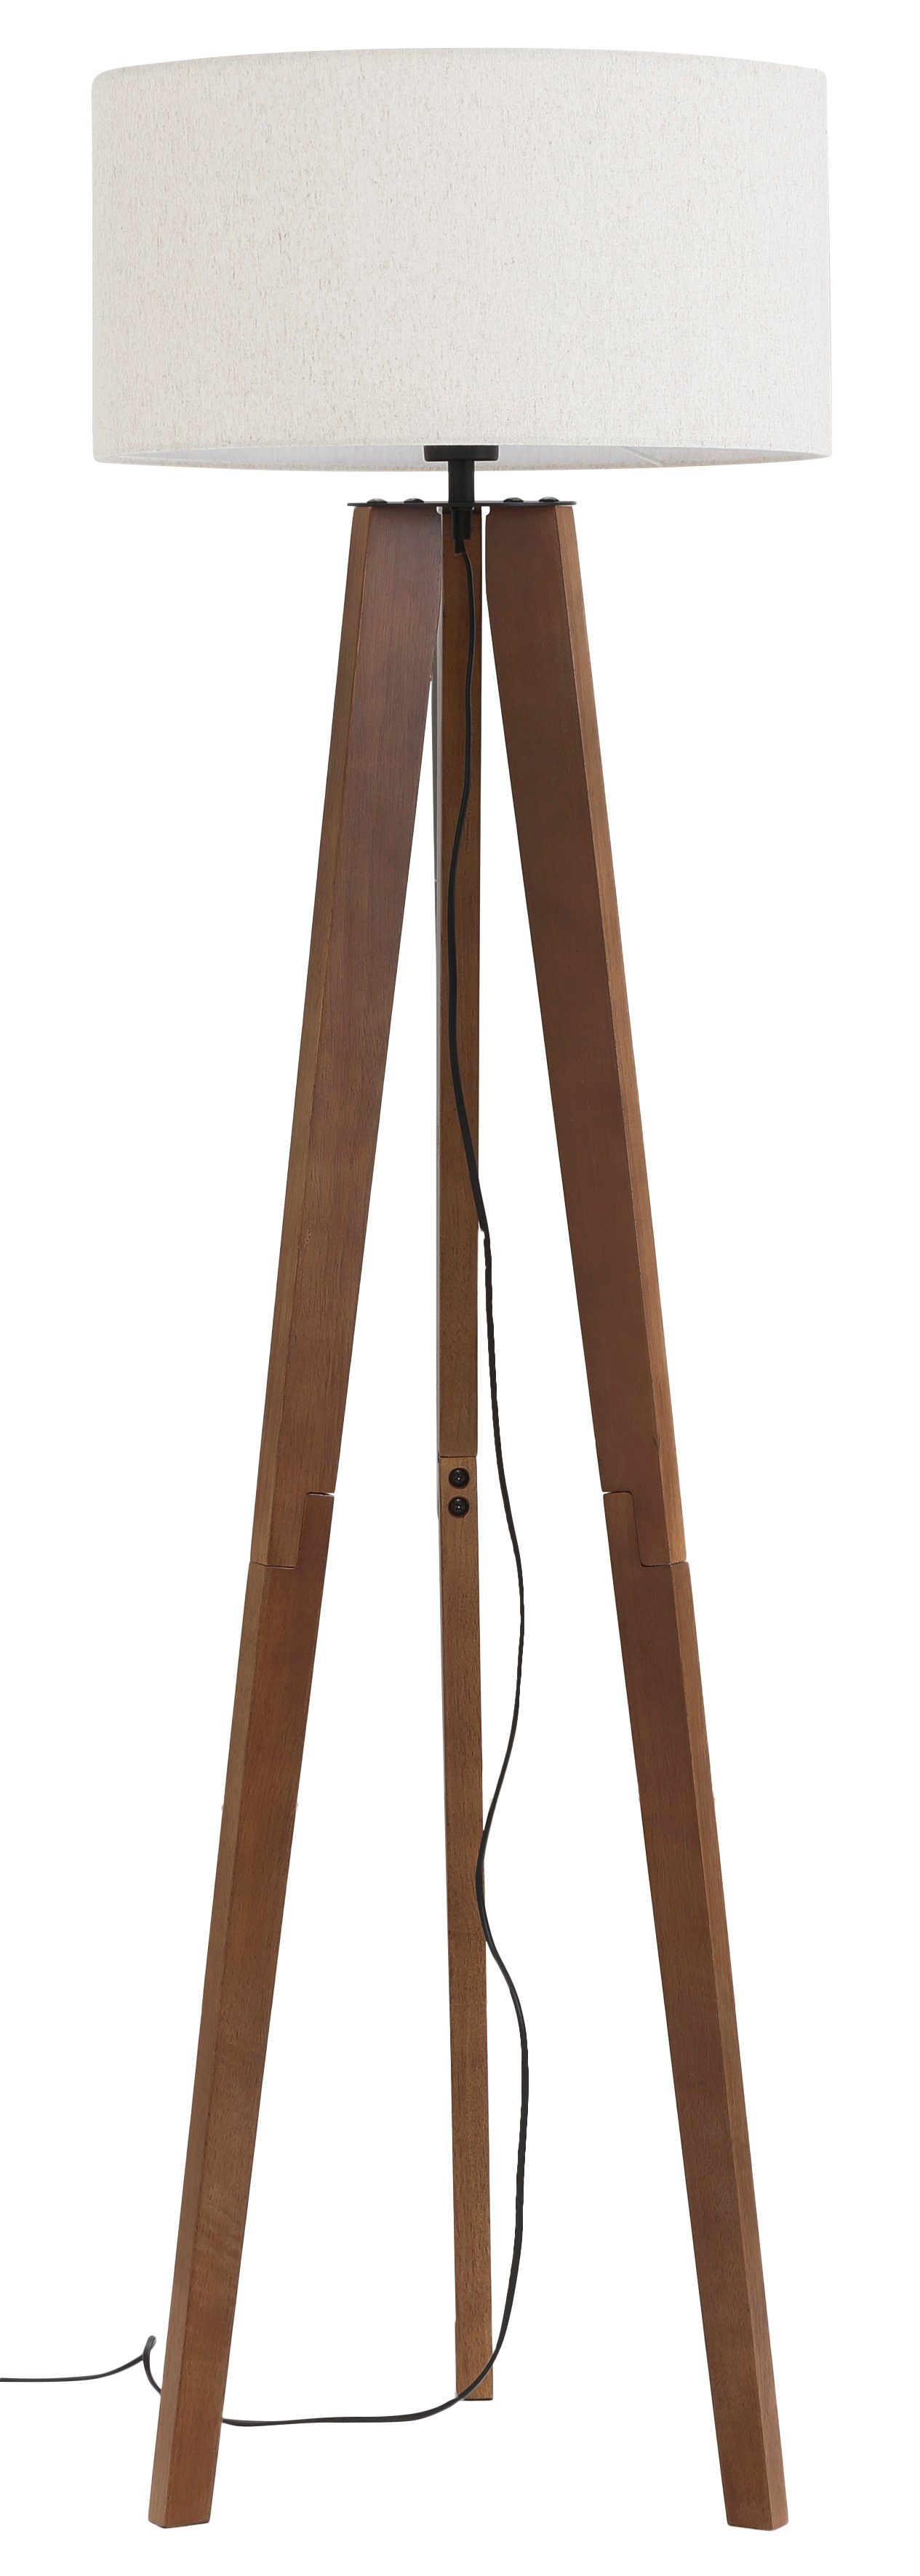 Home affaire Stehlampe »Davos«, ohne Leuchtmittel, mass. Holz, Dreibein,  Leinenschirm / Stoff - Schirm Ø 45 cm, H 149 cm